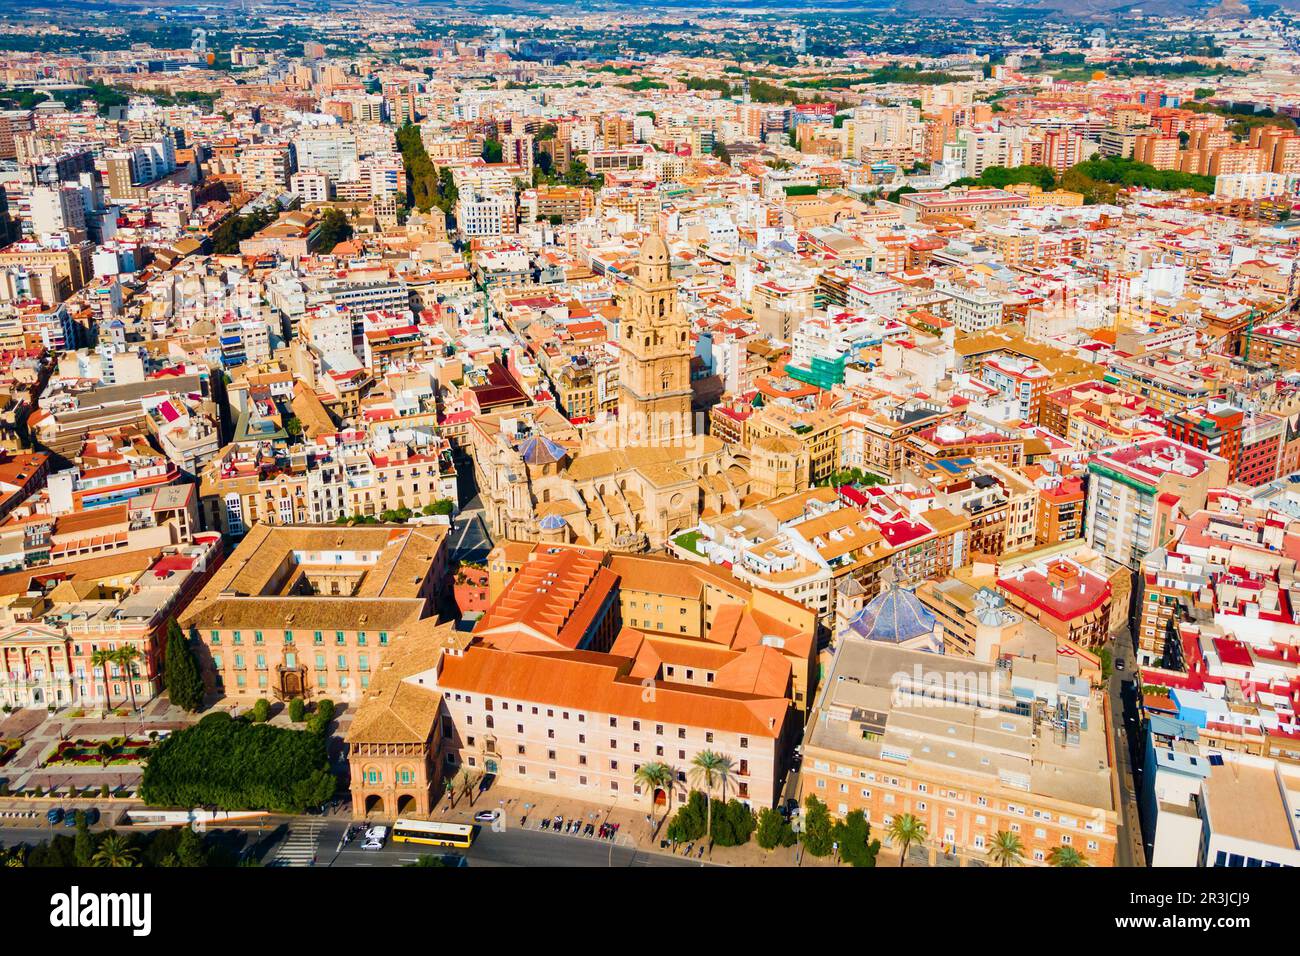 La chiesa Cattedrale di Santa Maria vista panoramica aerea, Murcia. Murcia è una città della Spagna sudorientale. Foto Stock